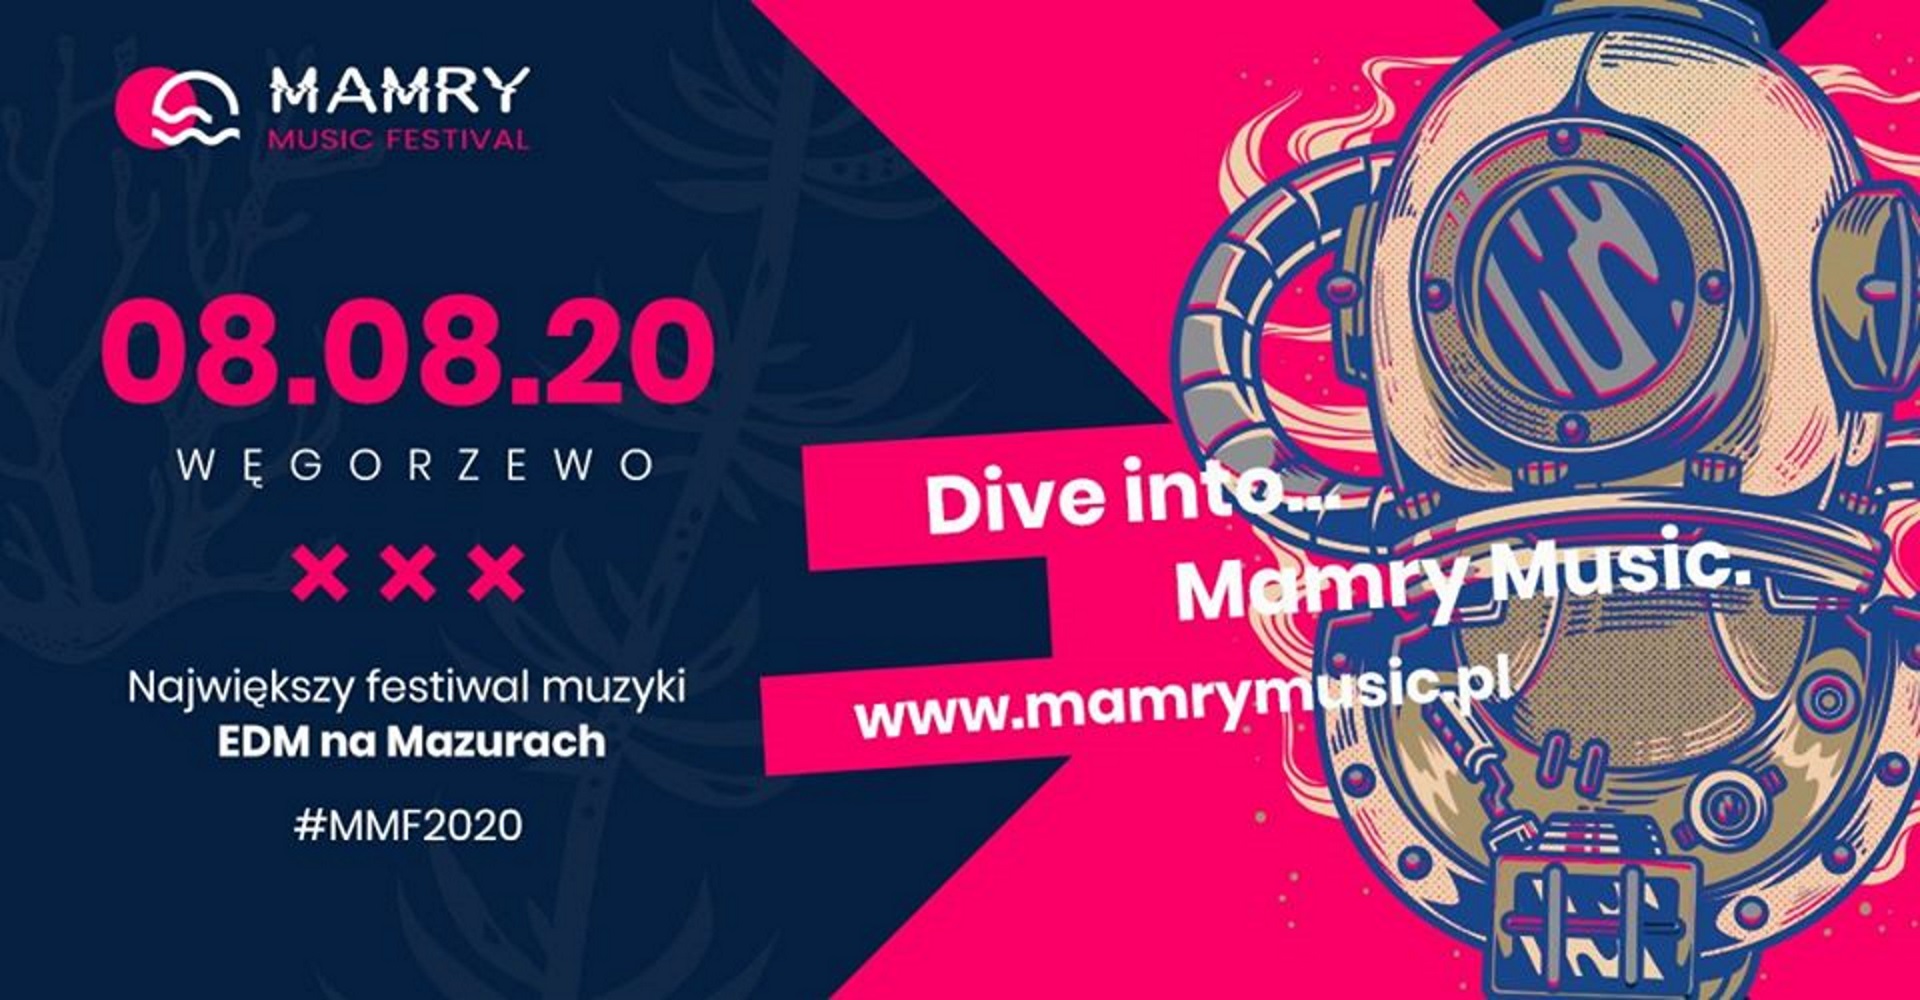 Zdjęcie do plakat zapraszający na imprezę Mamry Music Festiwal 2020. Na plakacie jest dodana informacja kiedy się rozpoczyna koncert, strona internetowa festiwalu oraz grafika z prawej strony plakatu przedstawiająca strój nurka.     